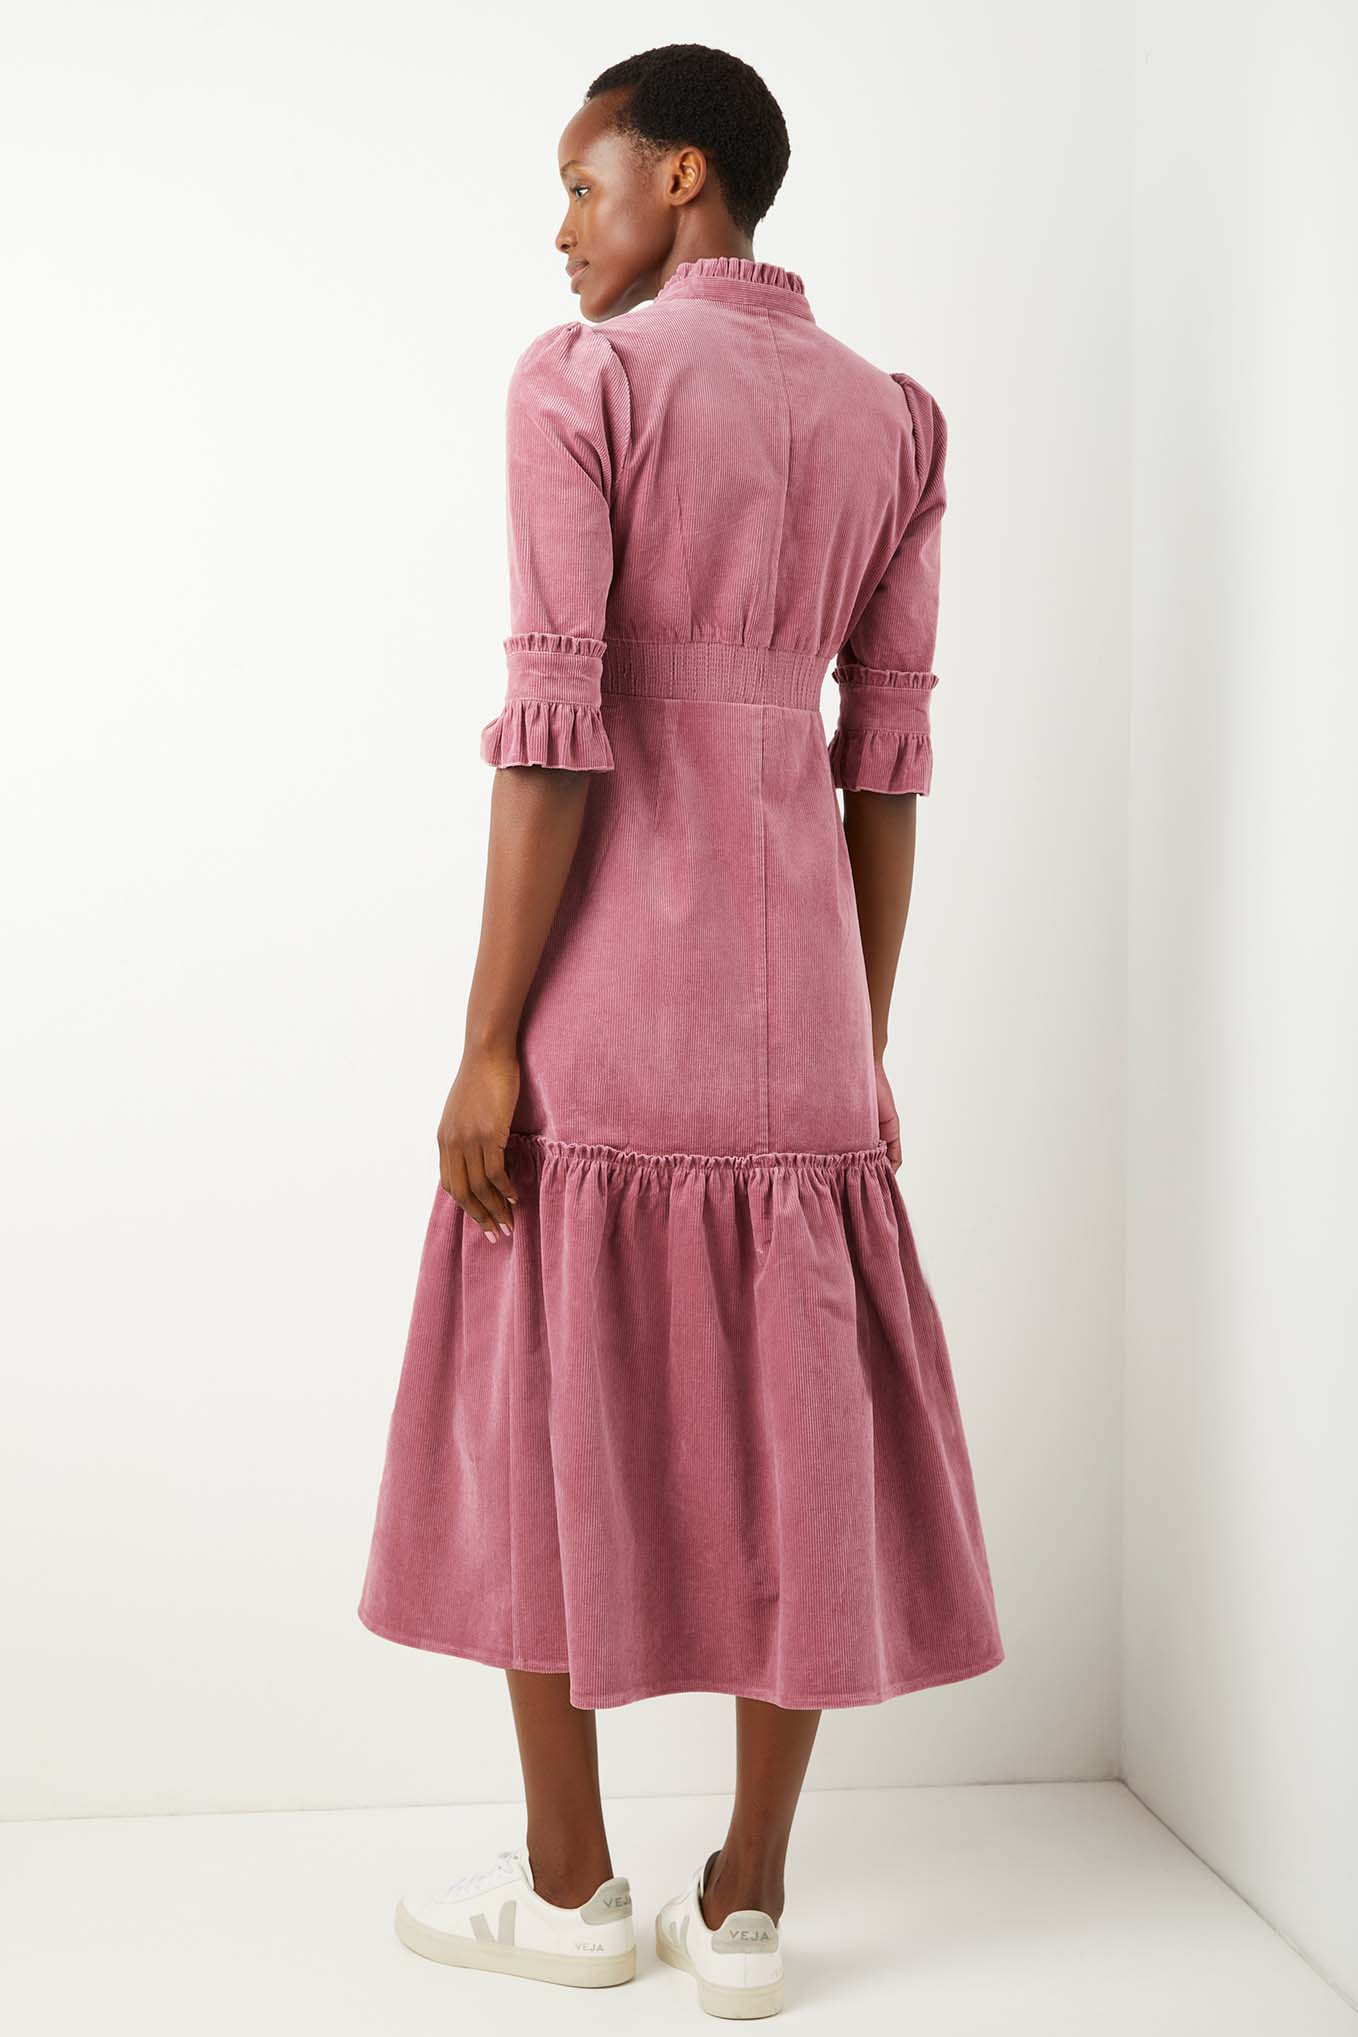 Isobel Corduroy Dress - Blush - Longer ...